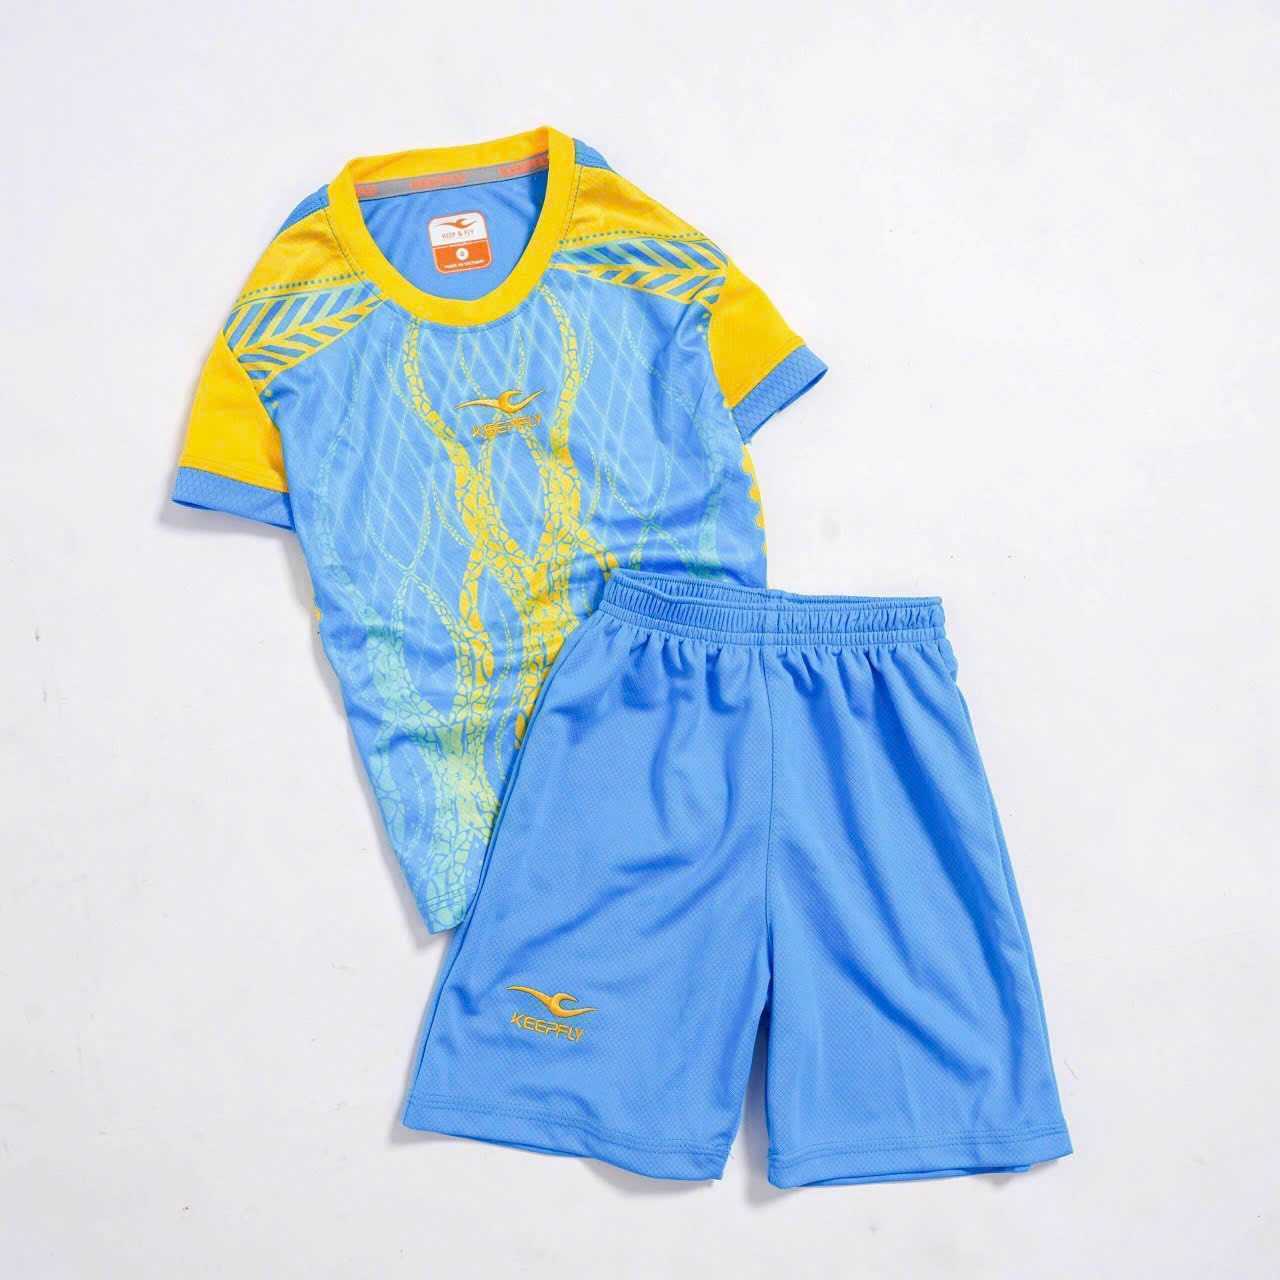 Bộ quần áo thể thao đồng phục bóng đá trẻ em size nhỏ cho bé chính hãng keep & fly việt nam nhiều màu 2